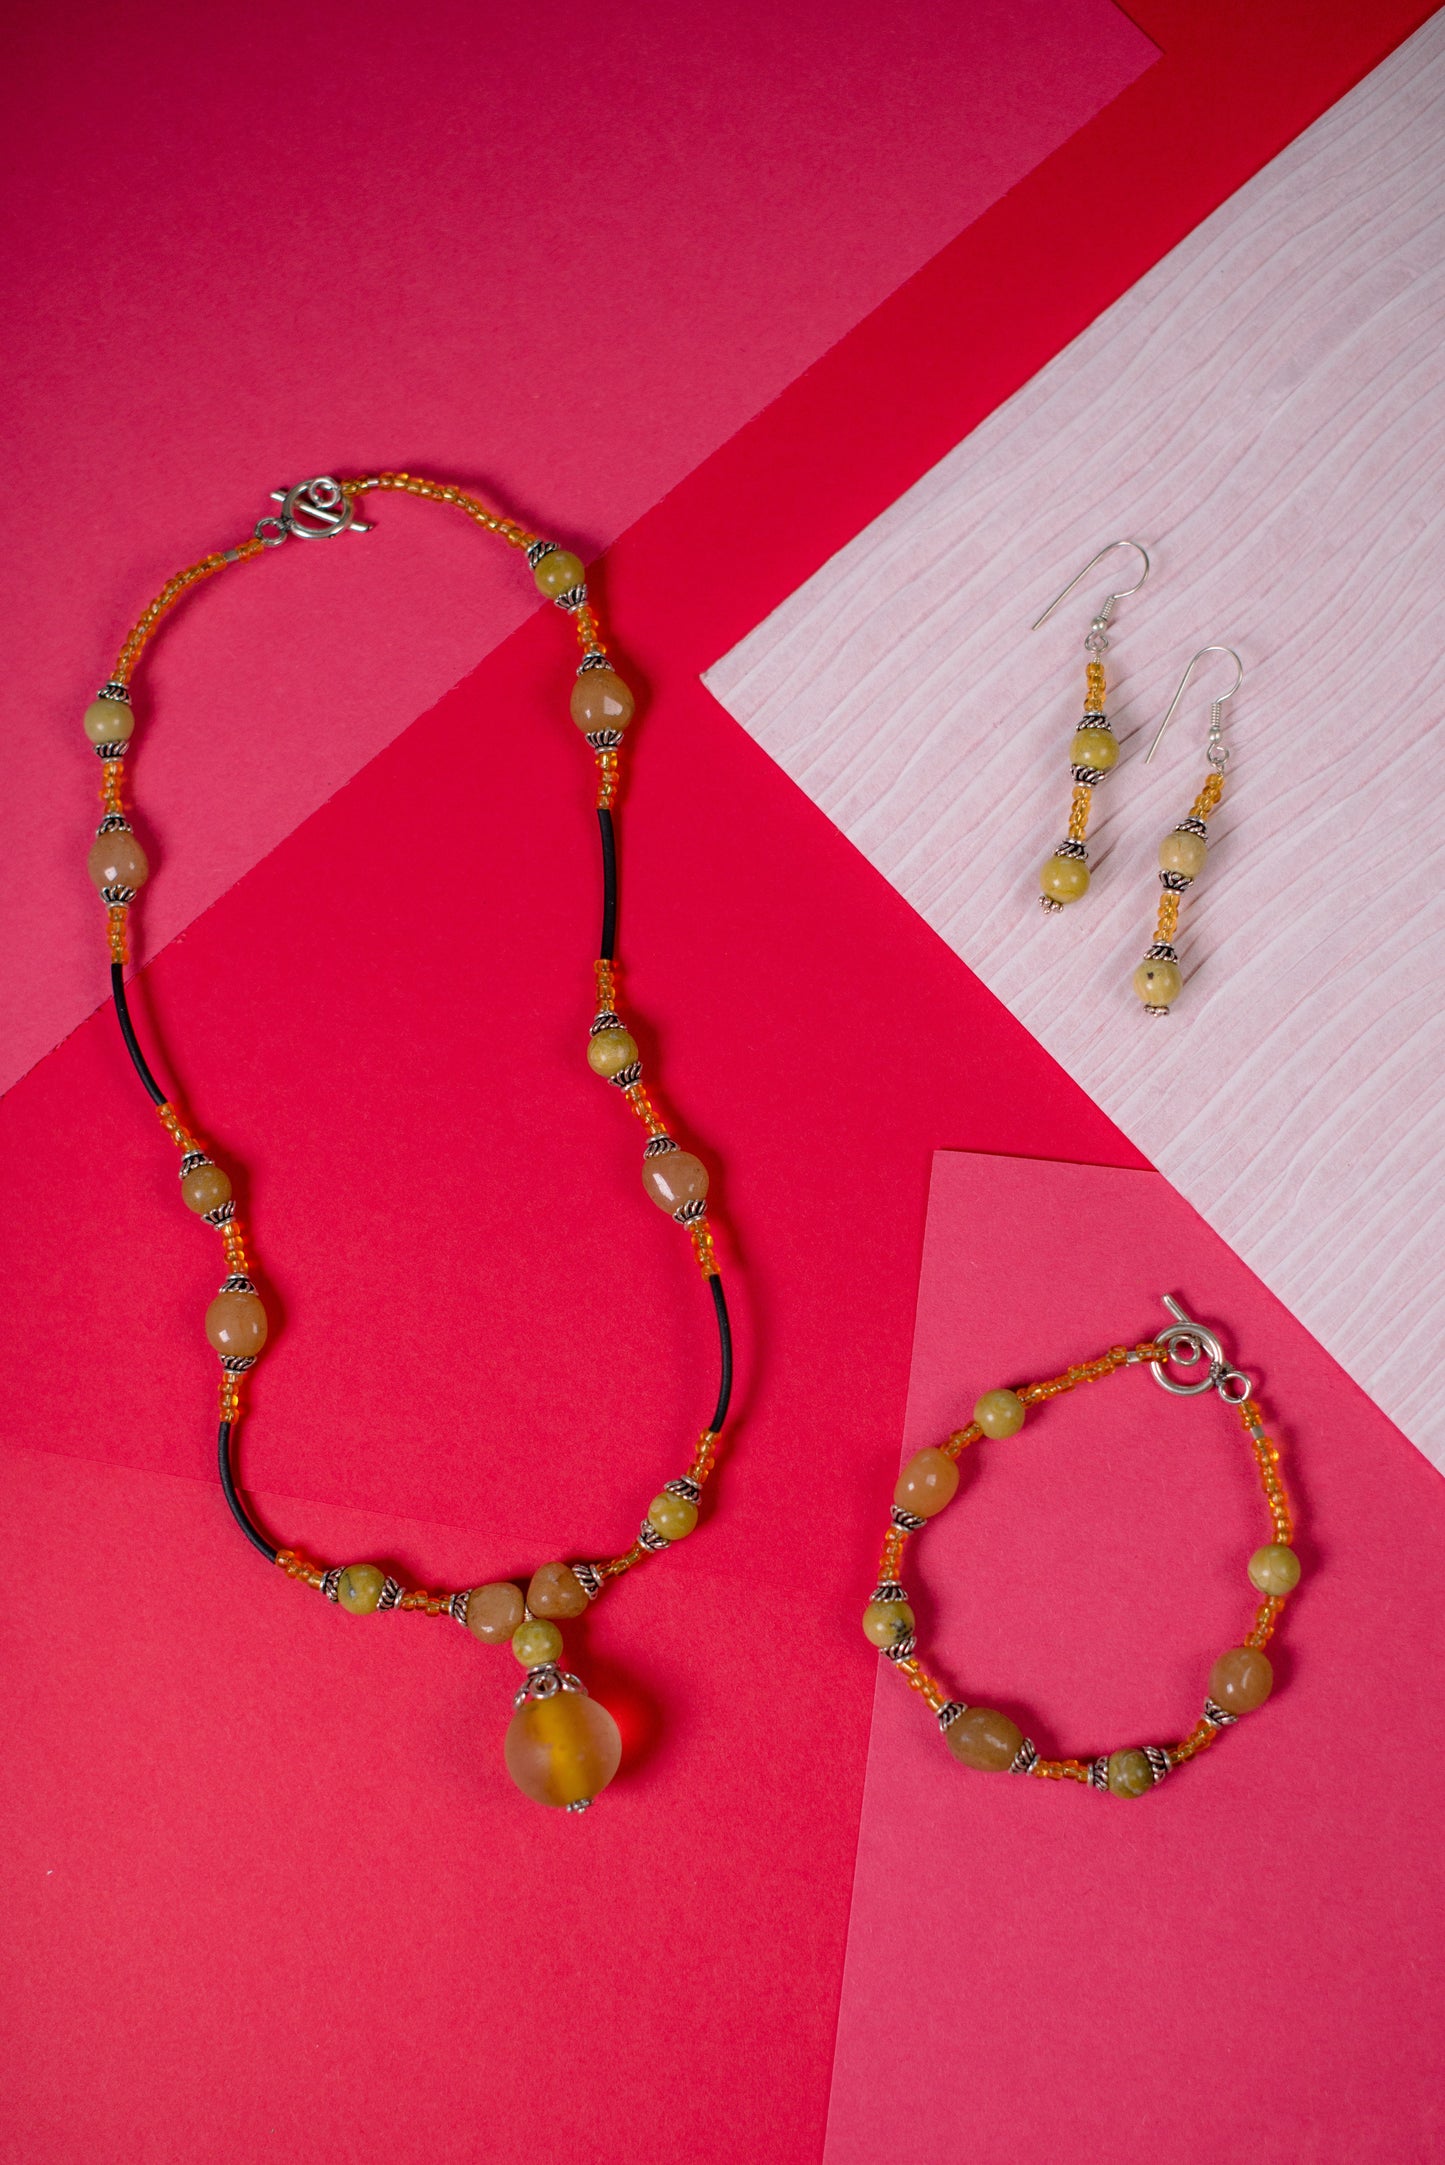 Black & Yellow Drop Necklace/Bracelet/Earrings Set